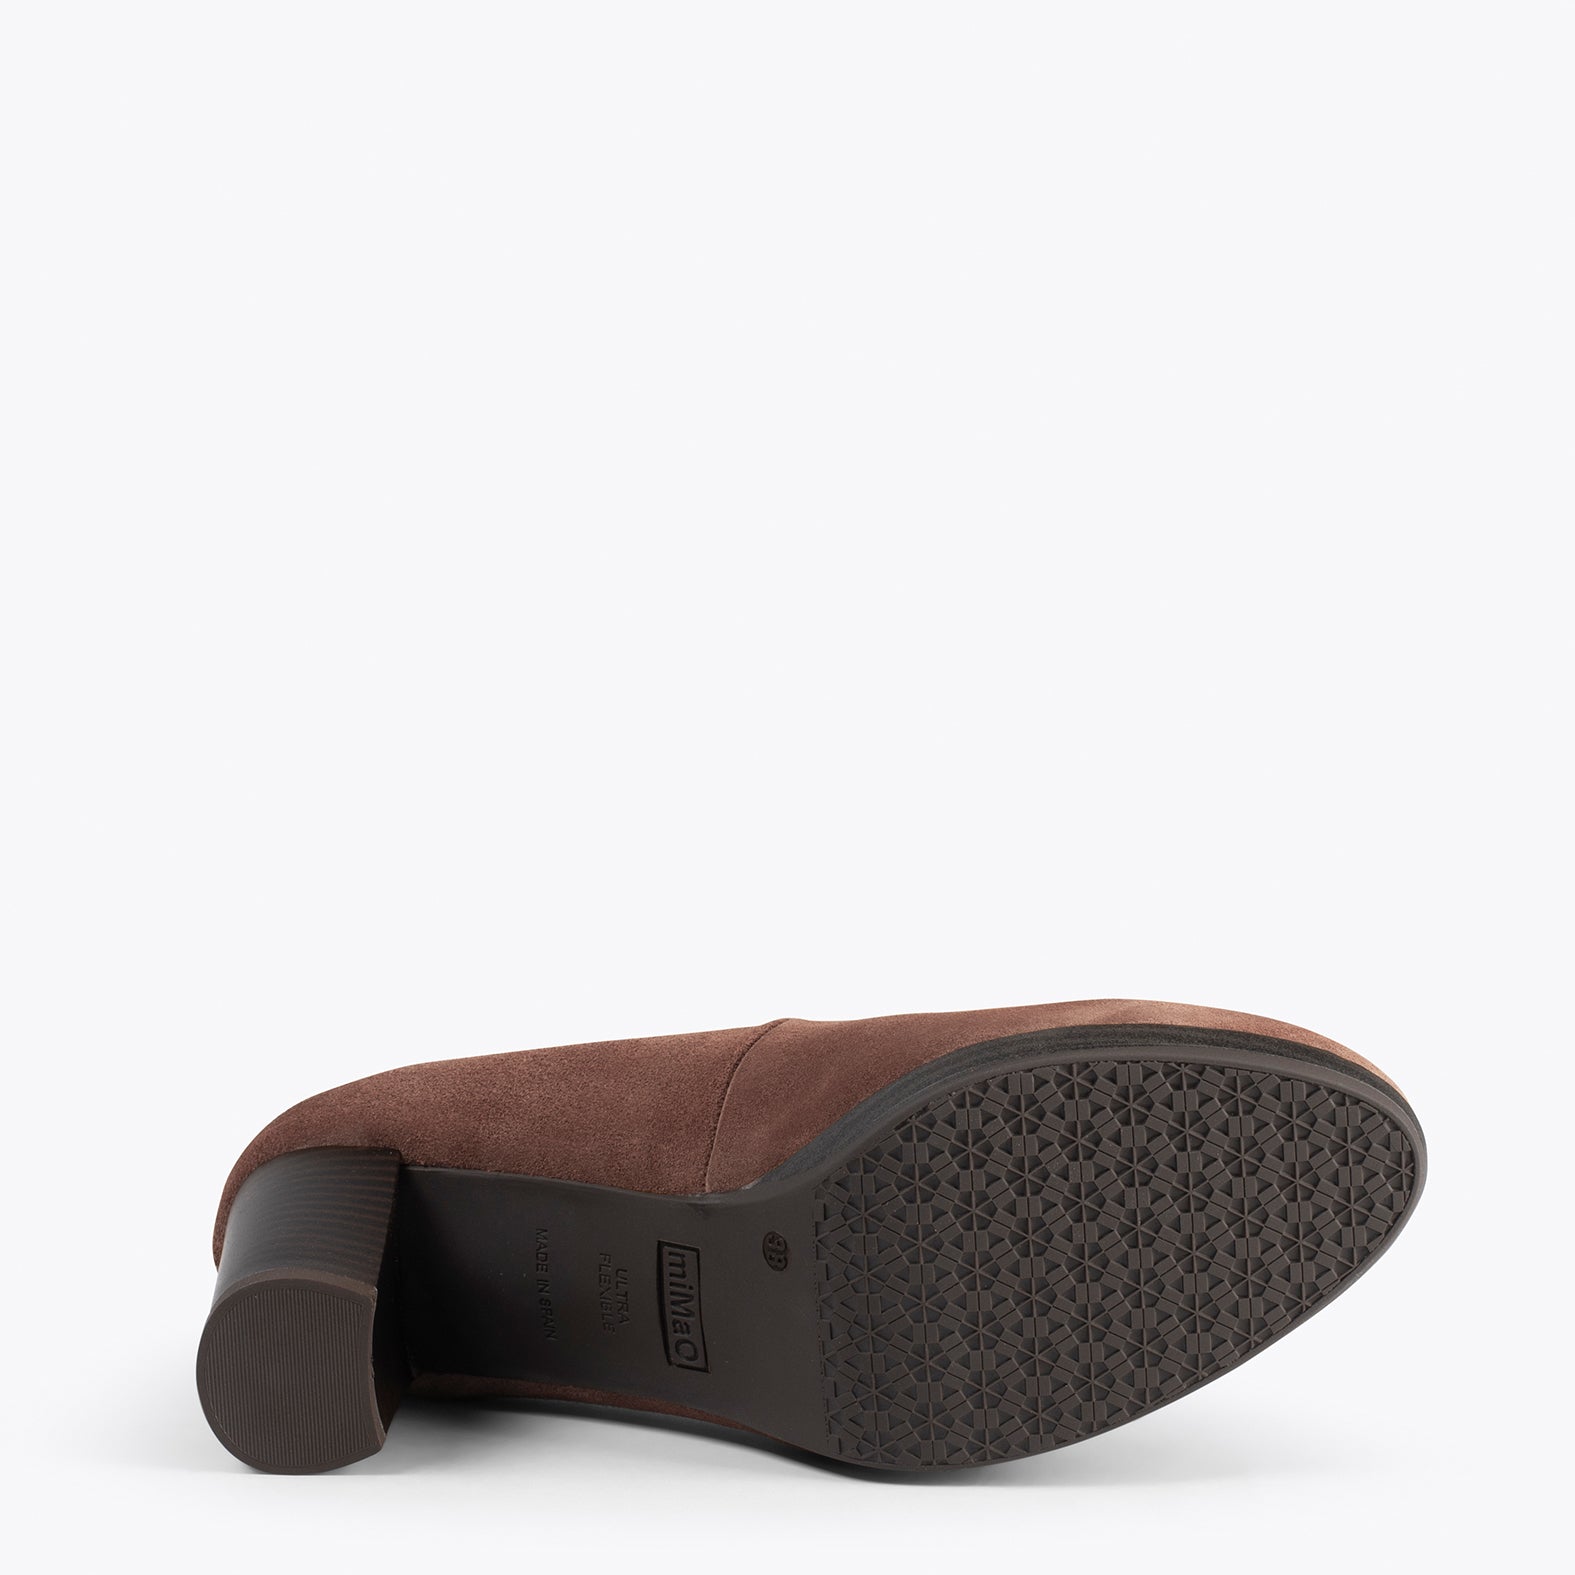 AZAFATA VINTAGE - Zapatos con tacón y plataforma MARRON